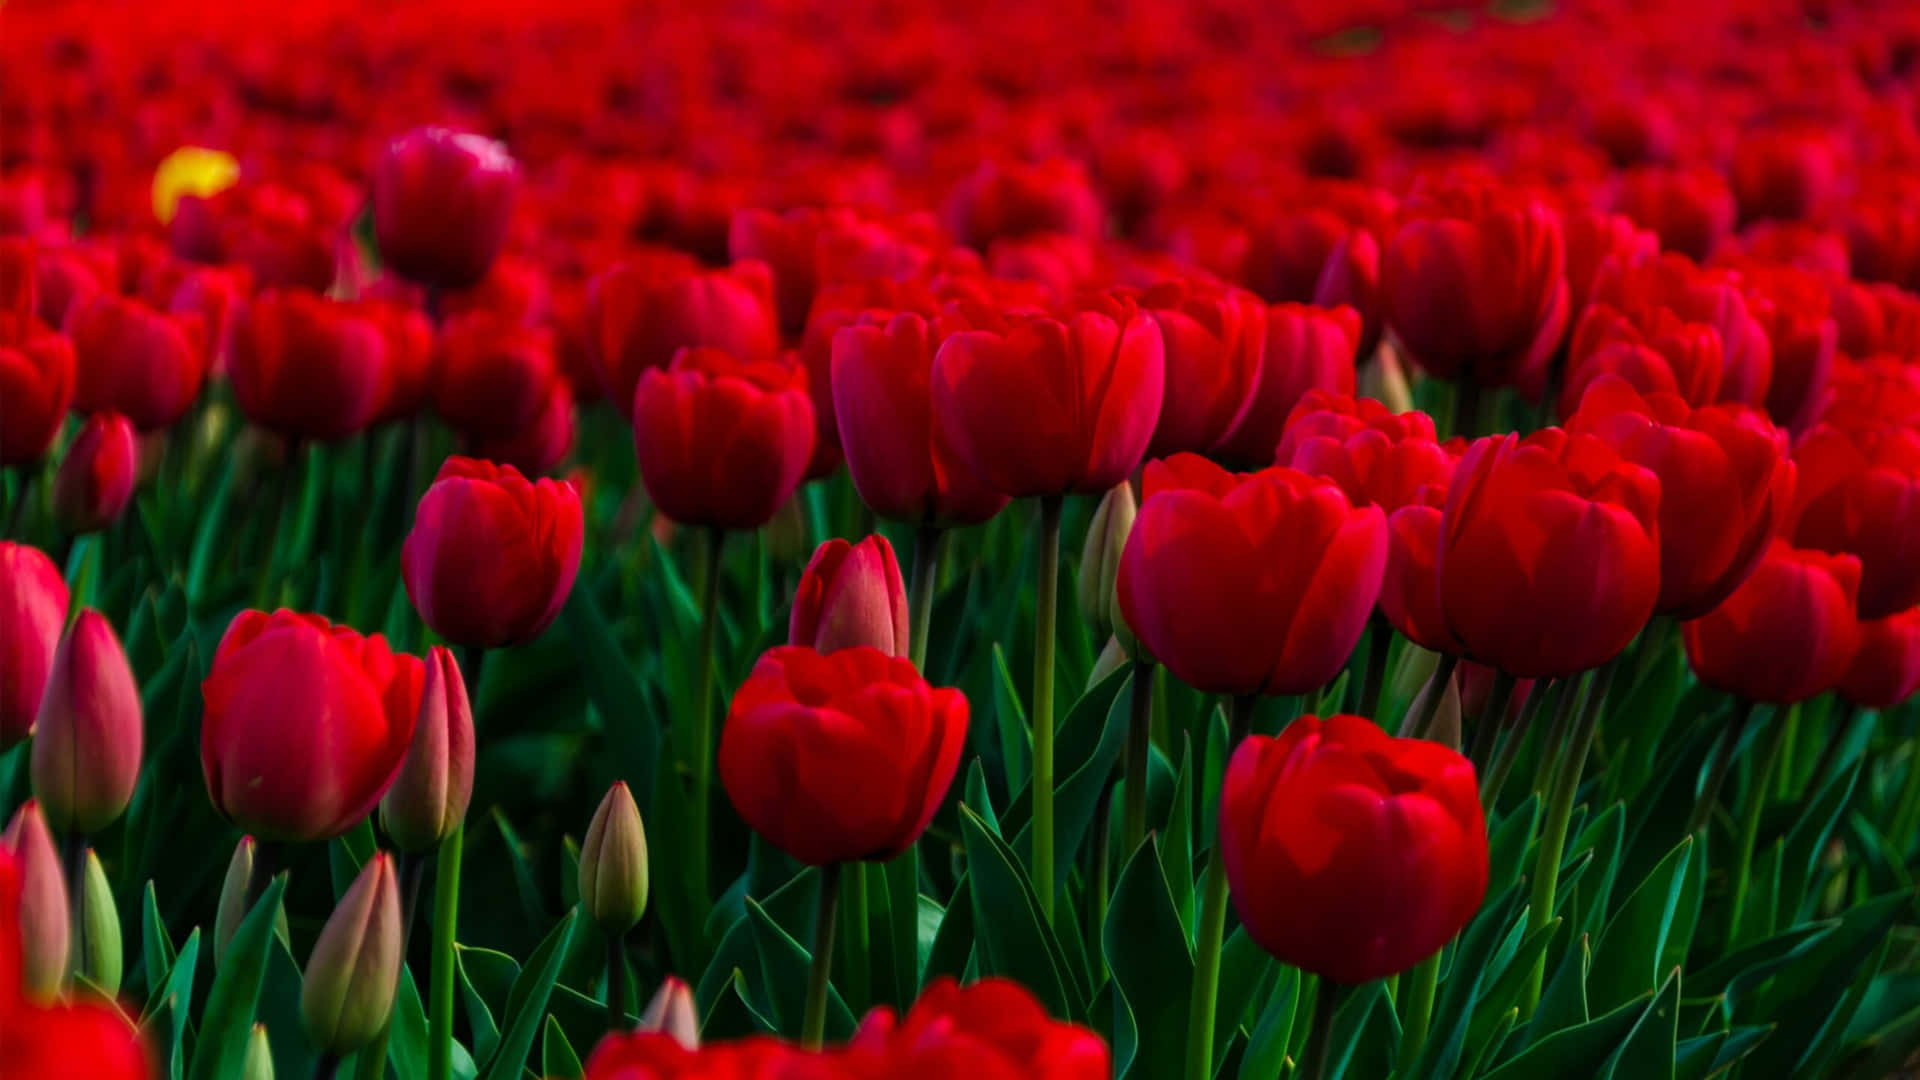 Uncampo De Tulipanes Rojos En Flor